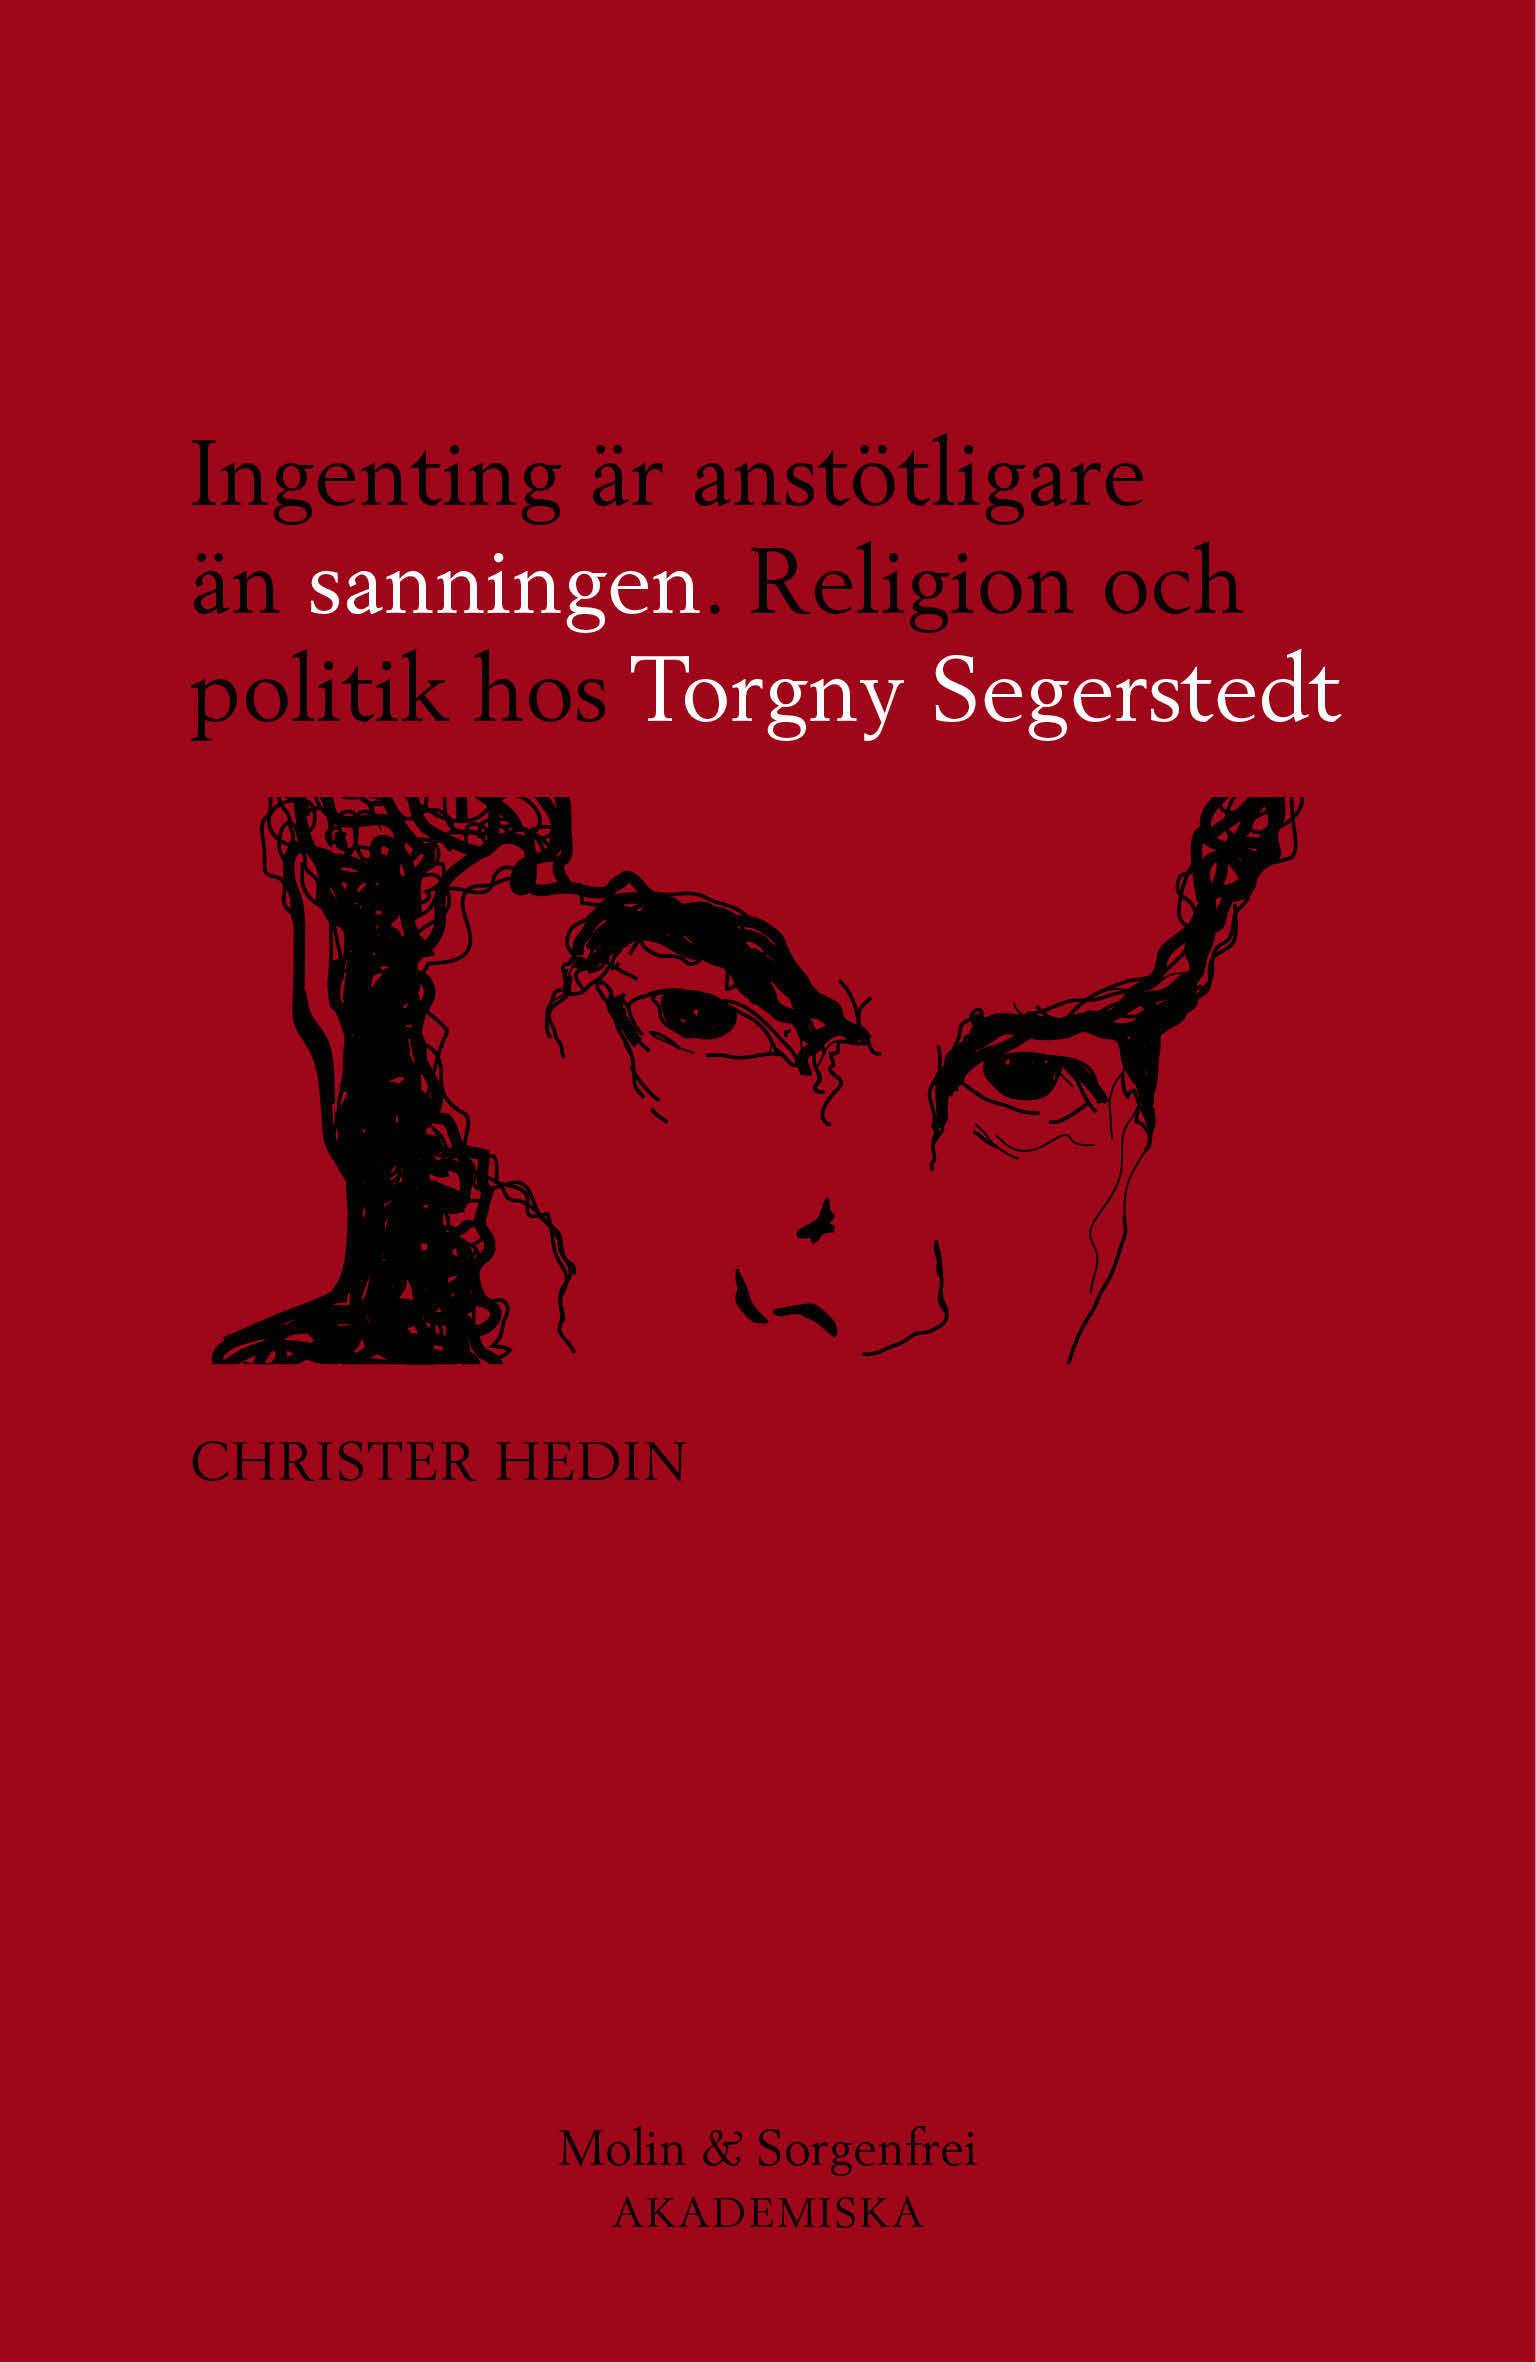 Ingenting är anstötligare än sanningen : religion och politik hos Torgny Segerstedt